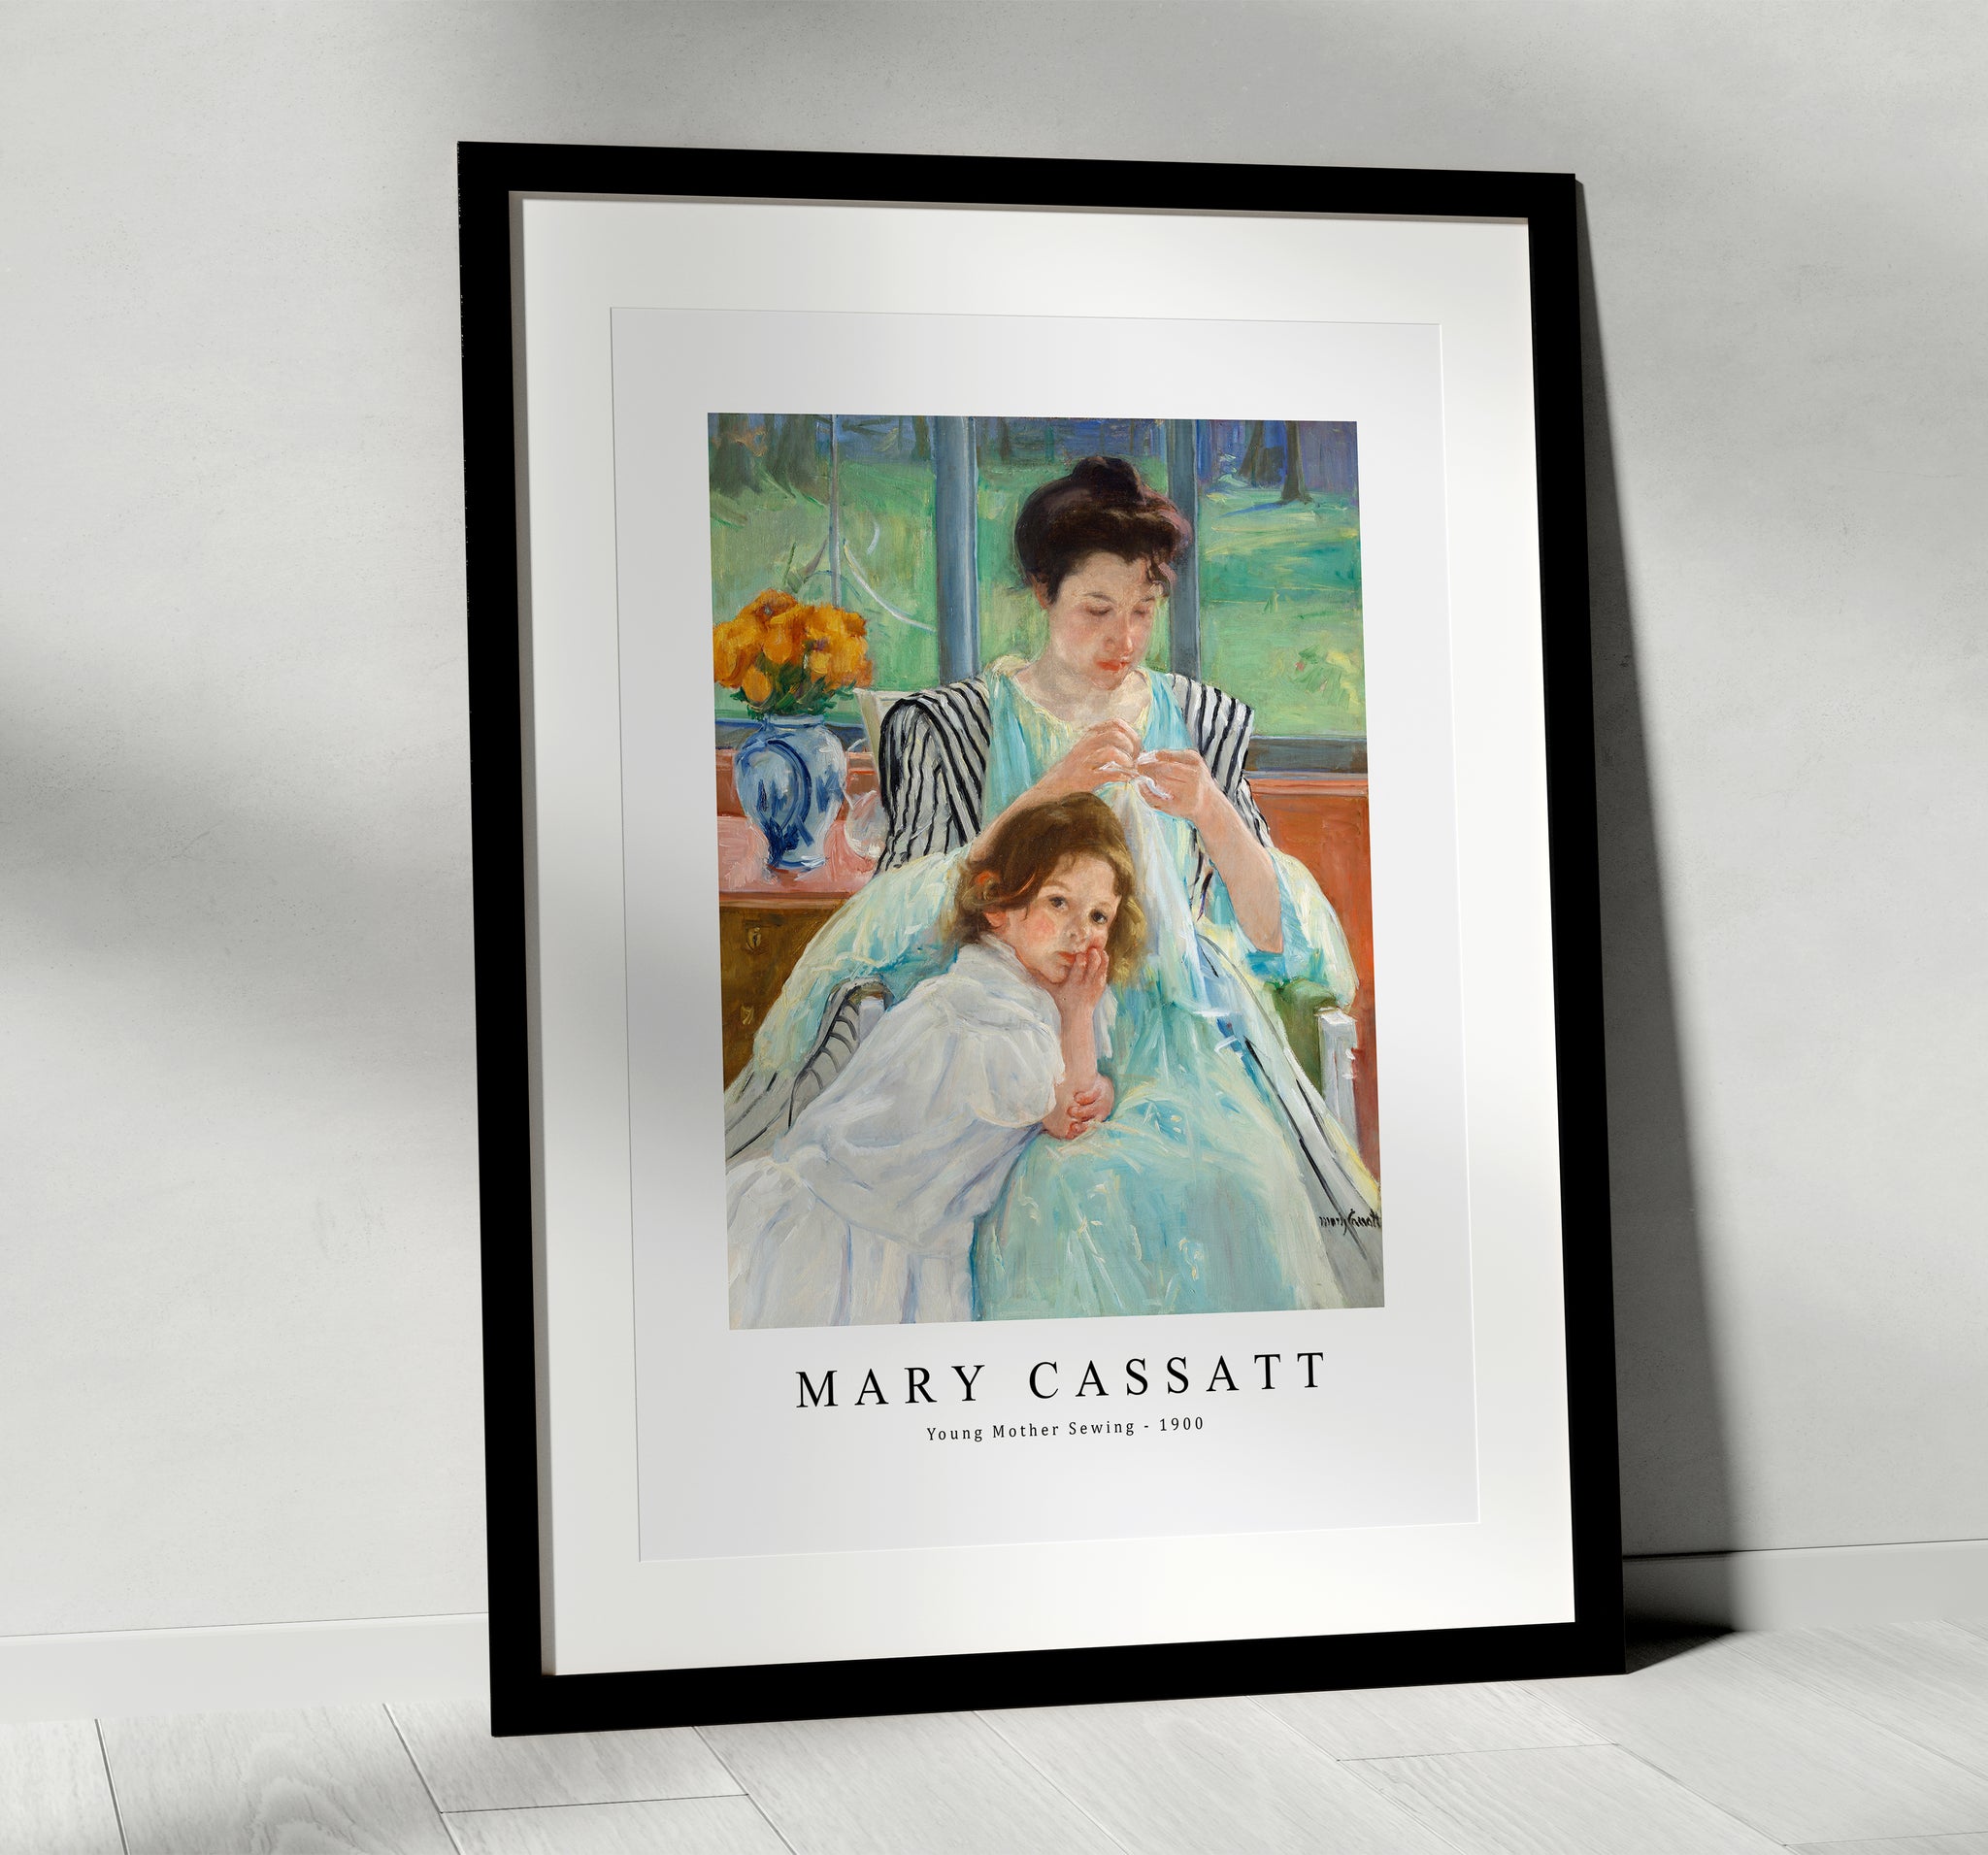 Young Mother Sewing Artist: Mary Cassatt